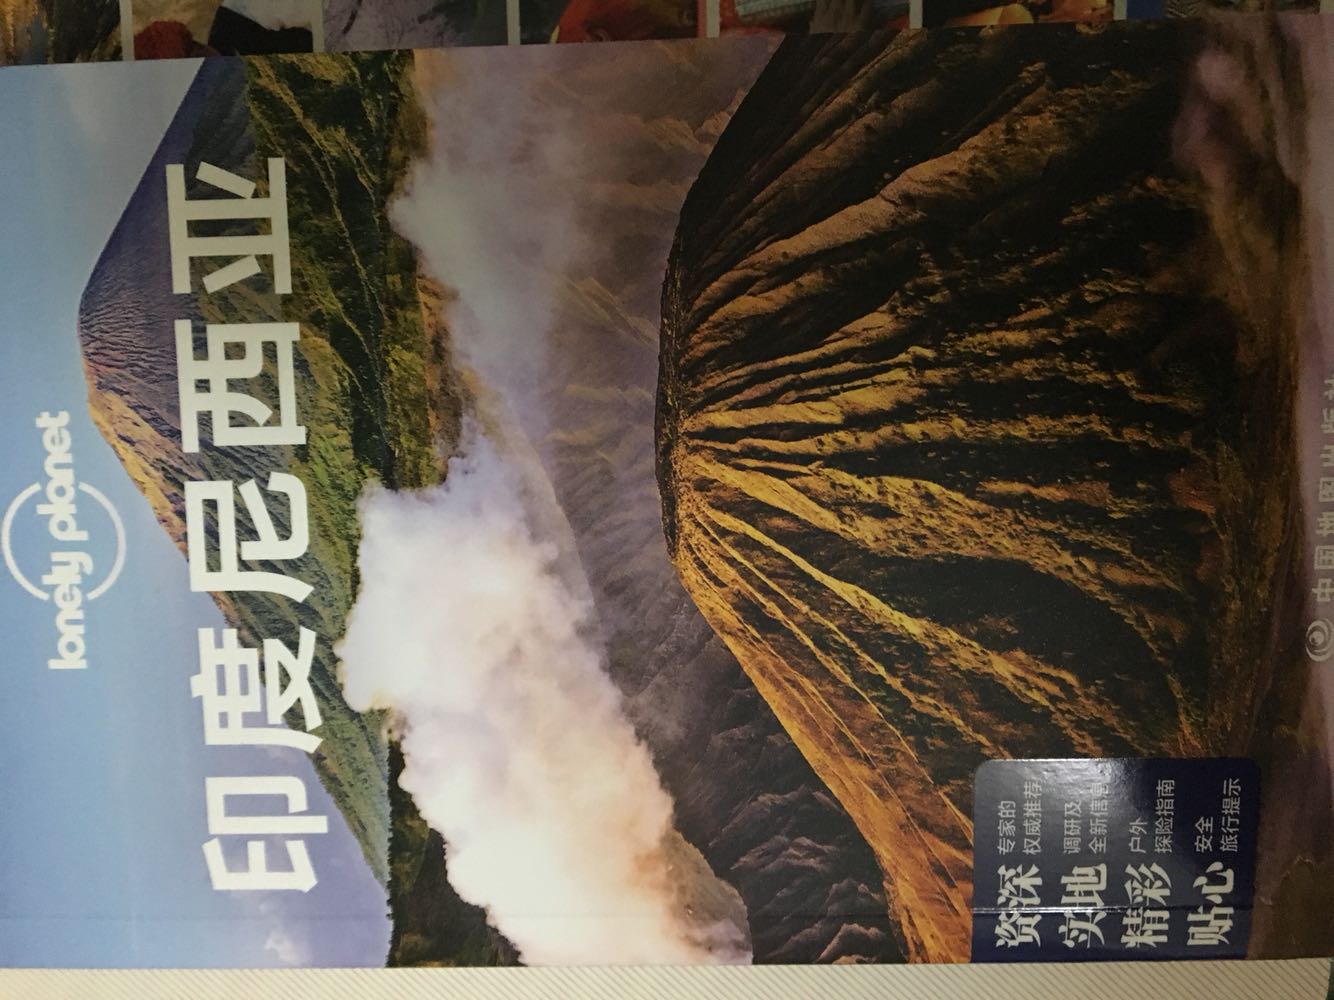 孤独星球Lonely Planet国际指南系列，非常不错的旅游图书，内容精细，印刷精良，非常有参考价值，值得推荐给每一位爱旅游的人，是旅行必备图书